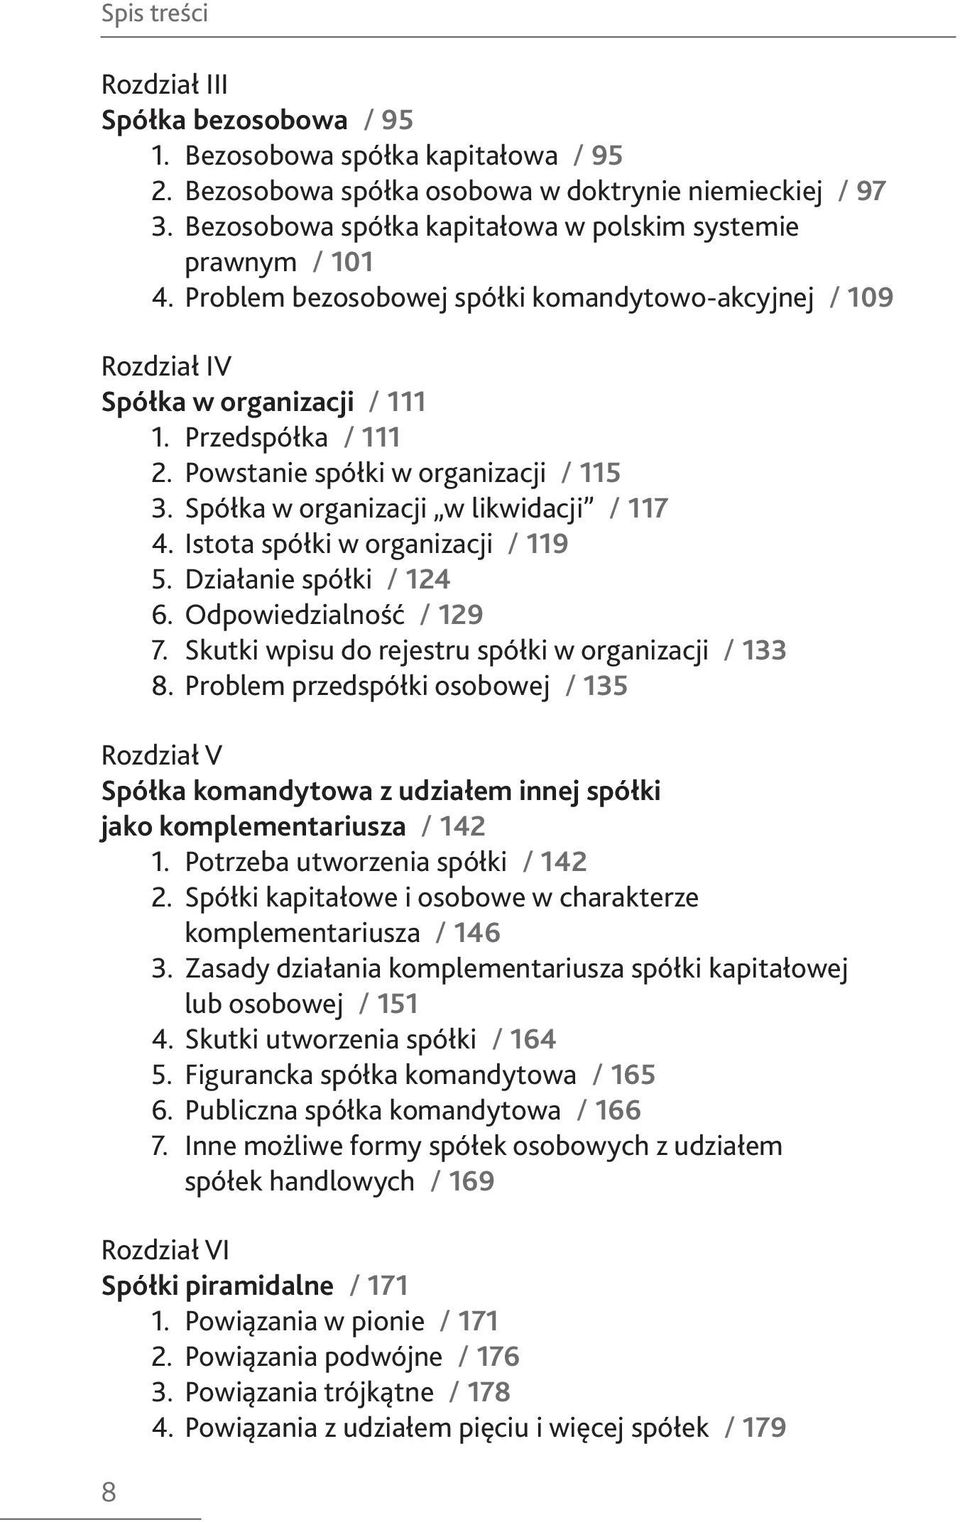 ATYPOWE SPÓŁKI HANDLOWE 3. WYDANIE - PDF Free Download